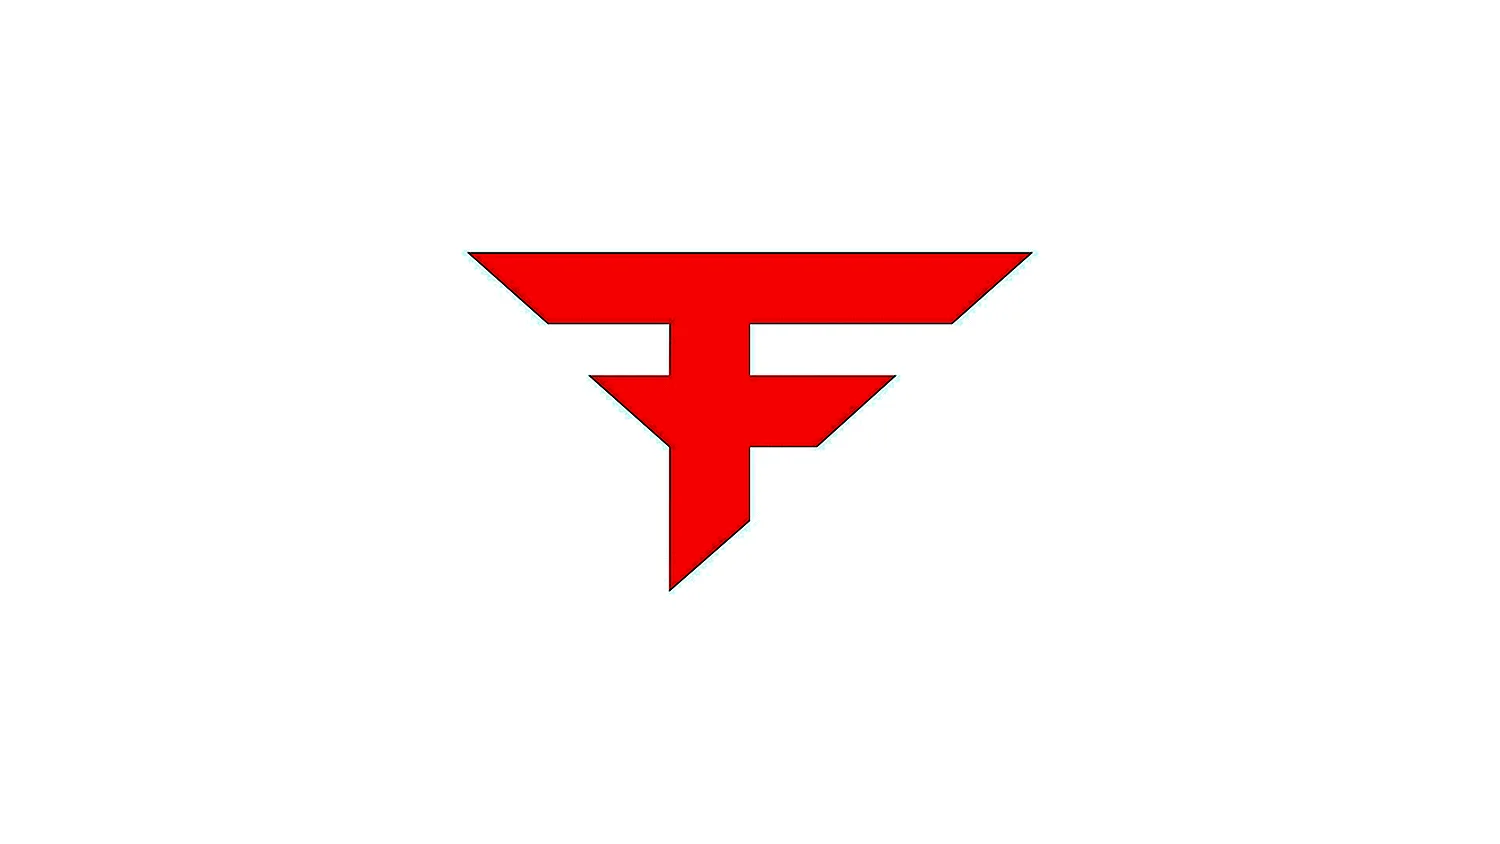 FAZE Clan белое лого красная обводка